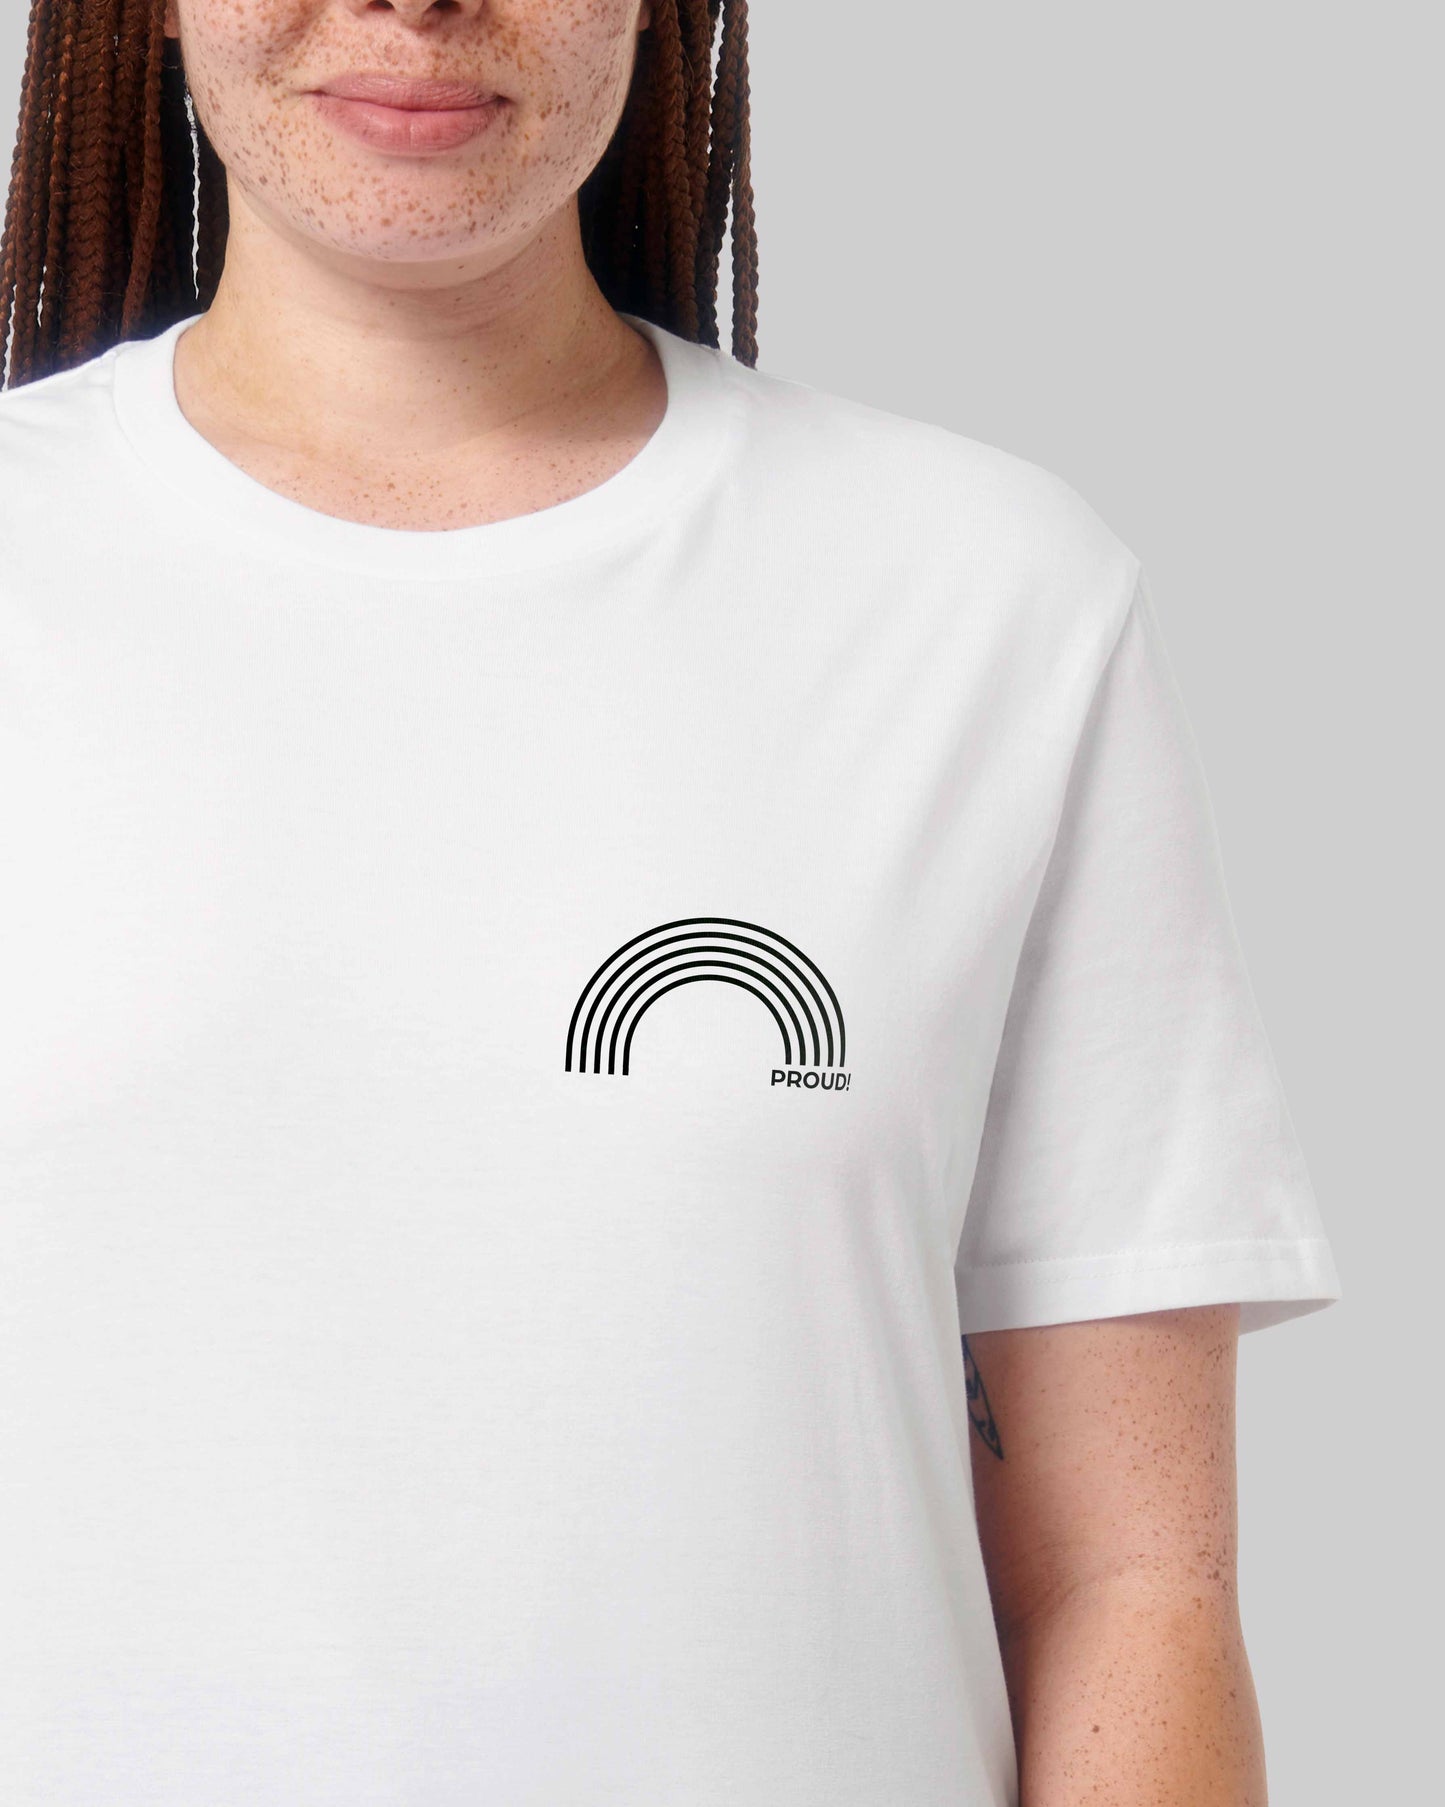 EINHORST® unisex Organic Shirt in Weiß mit dem Motiv "proud Regenbogen" in der Kombination schwarzer Regenbogen mit schwarzer Schrift, Bild von weiblicher Person mit Shirt